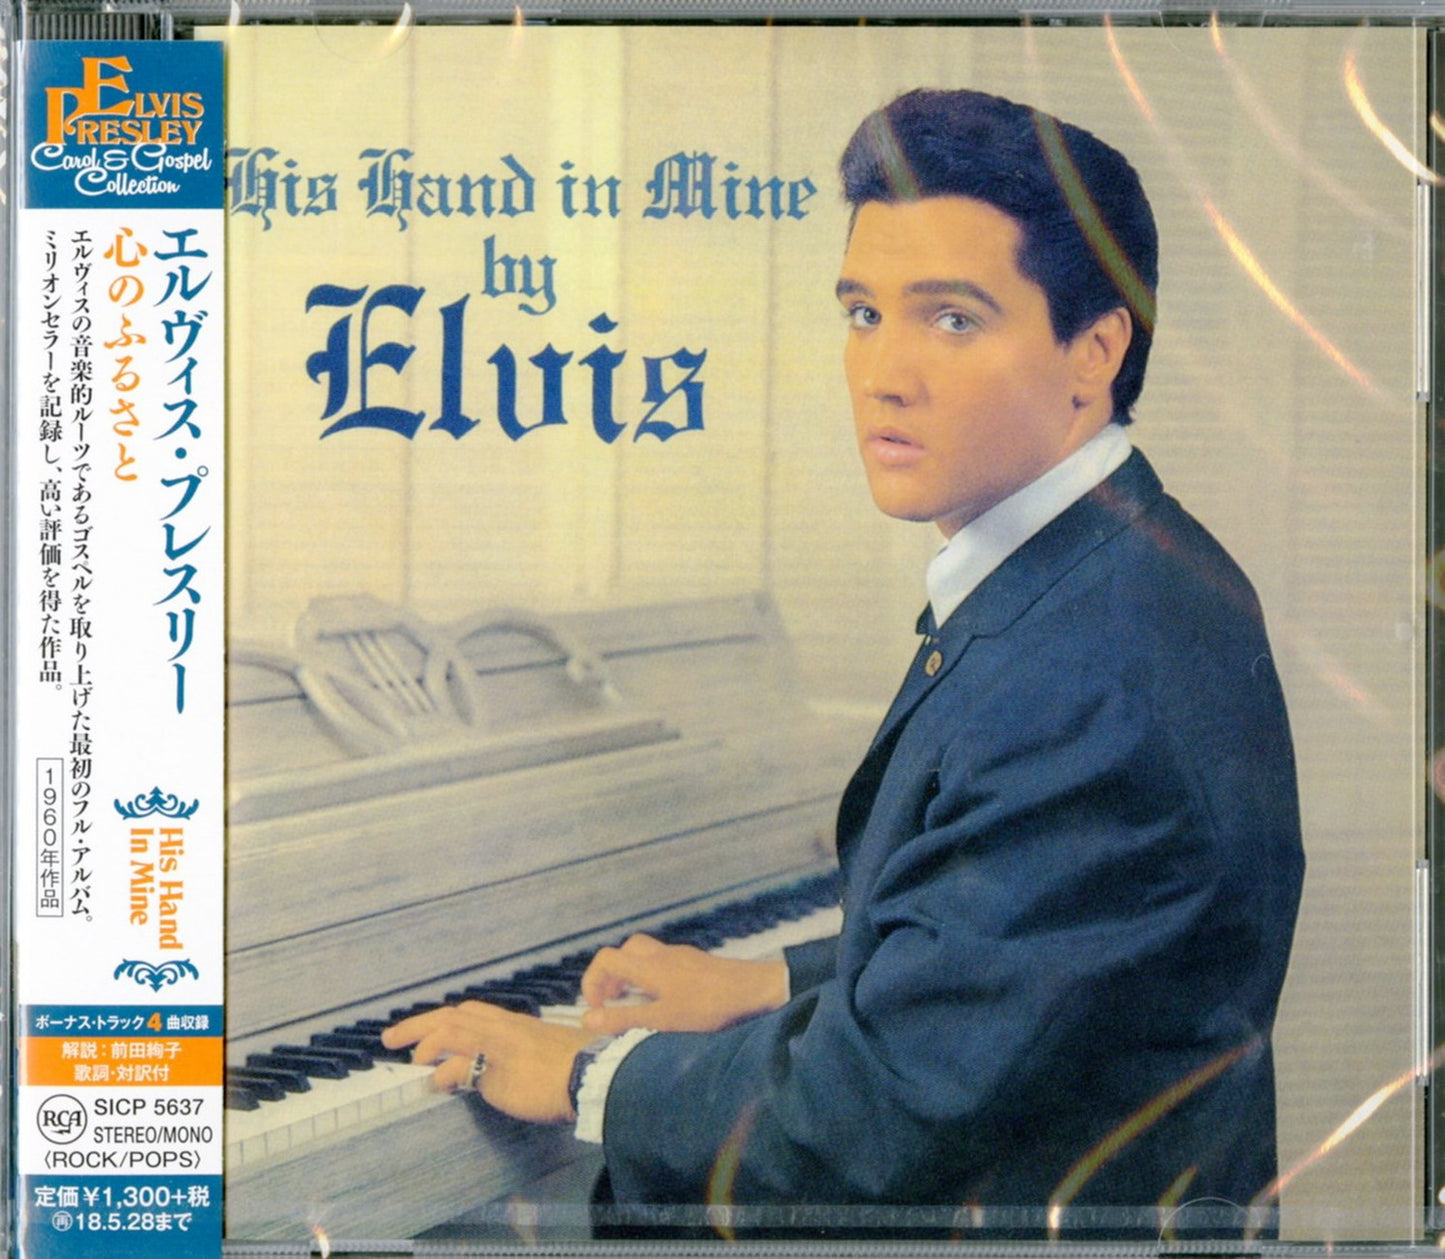 Elvis Presley - His Hand In Mine - Japan  CD Bonus Track